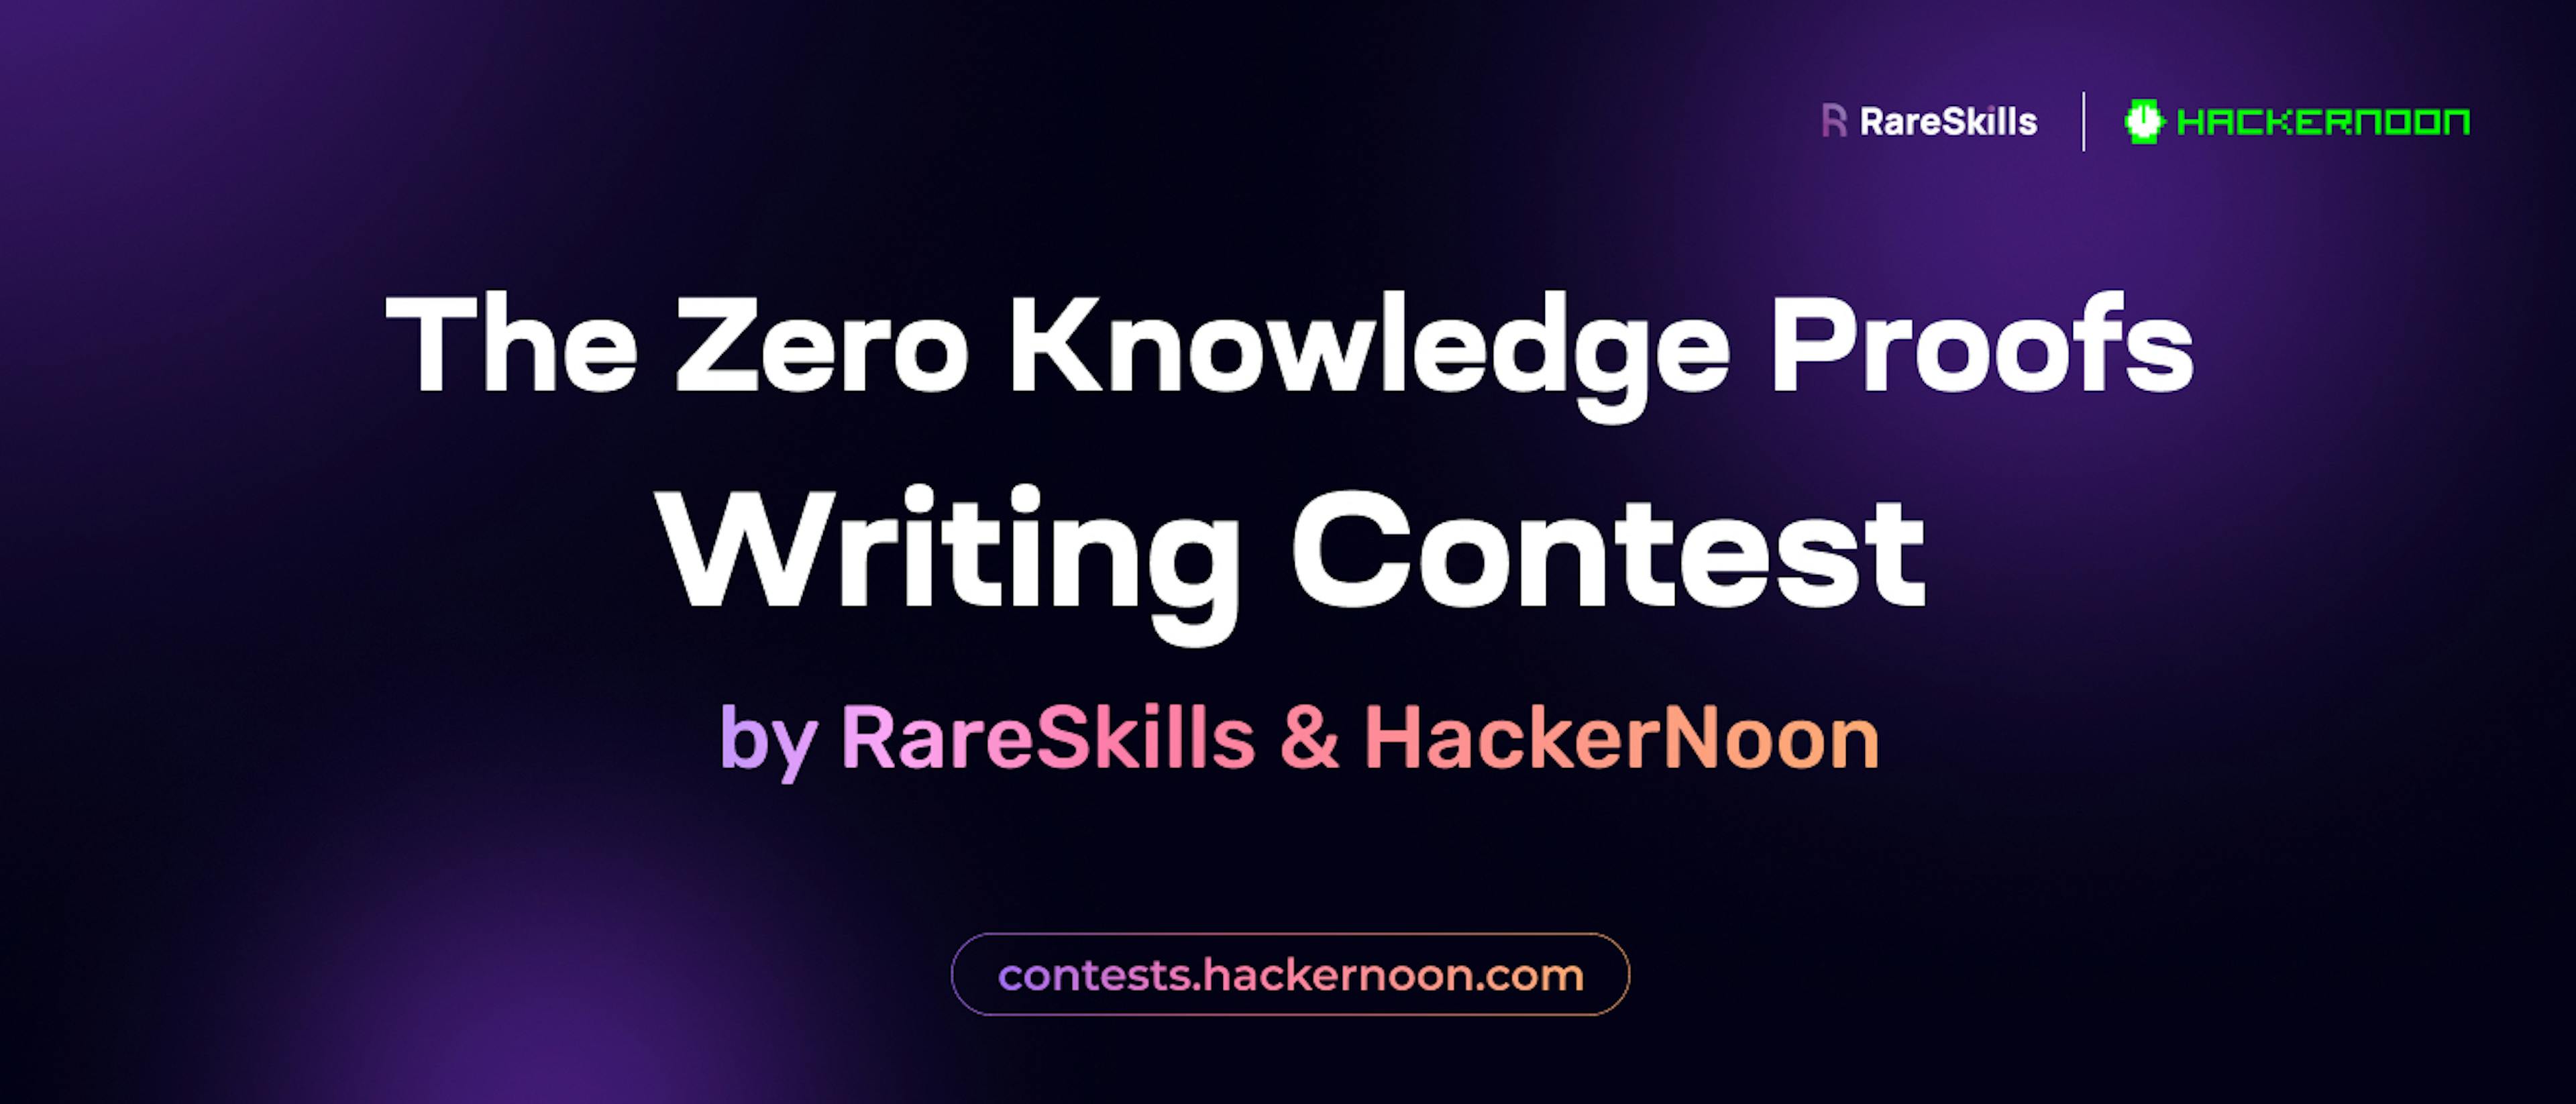 featured image - El concurso de redacción de pruebas de conocimiento cero de RareSkills